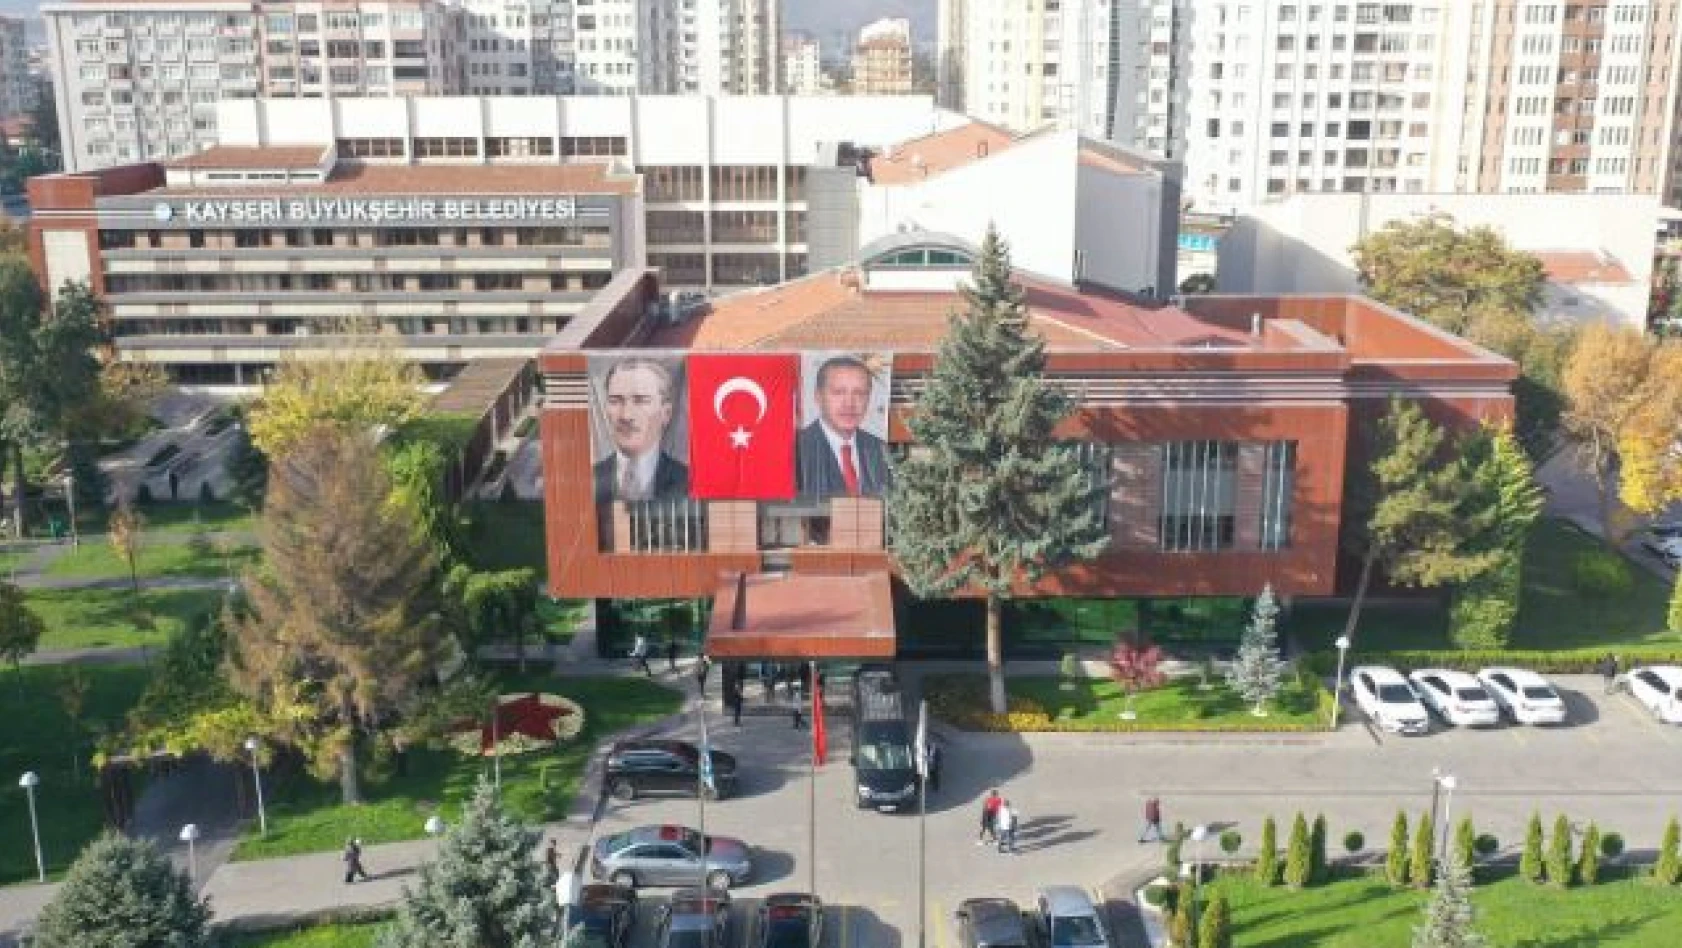 Kayseri Büyükşehir Belediyesi'ne yeni atama!